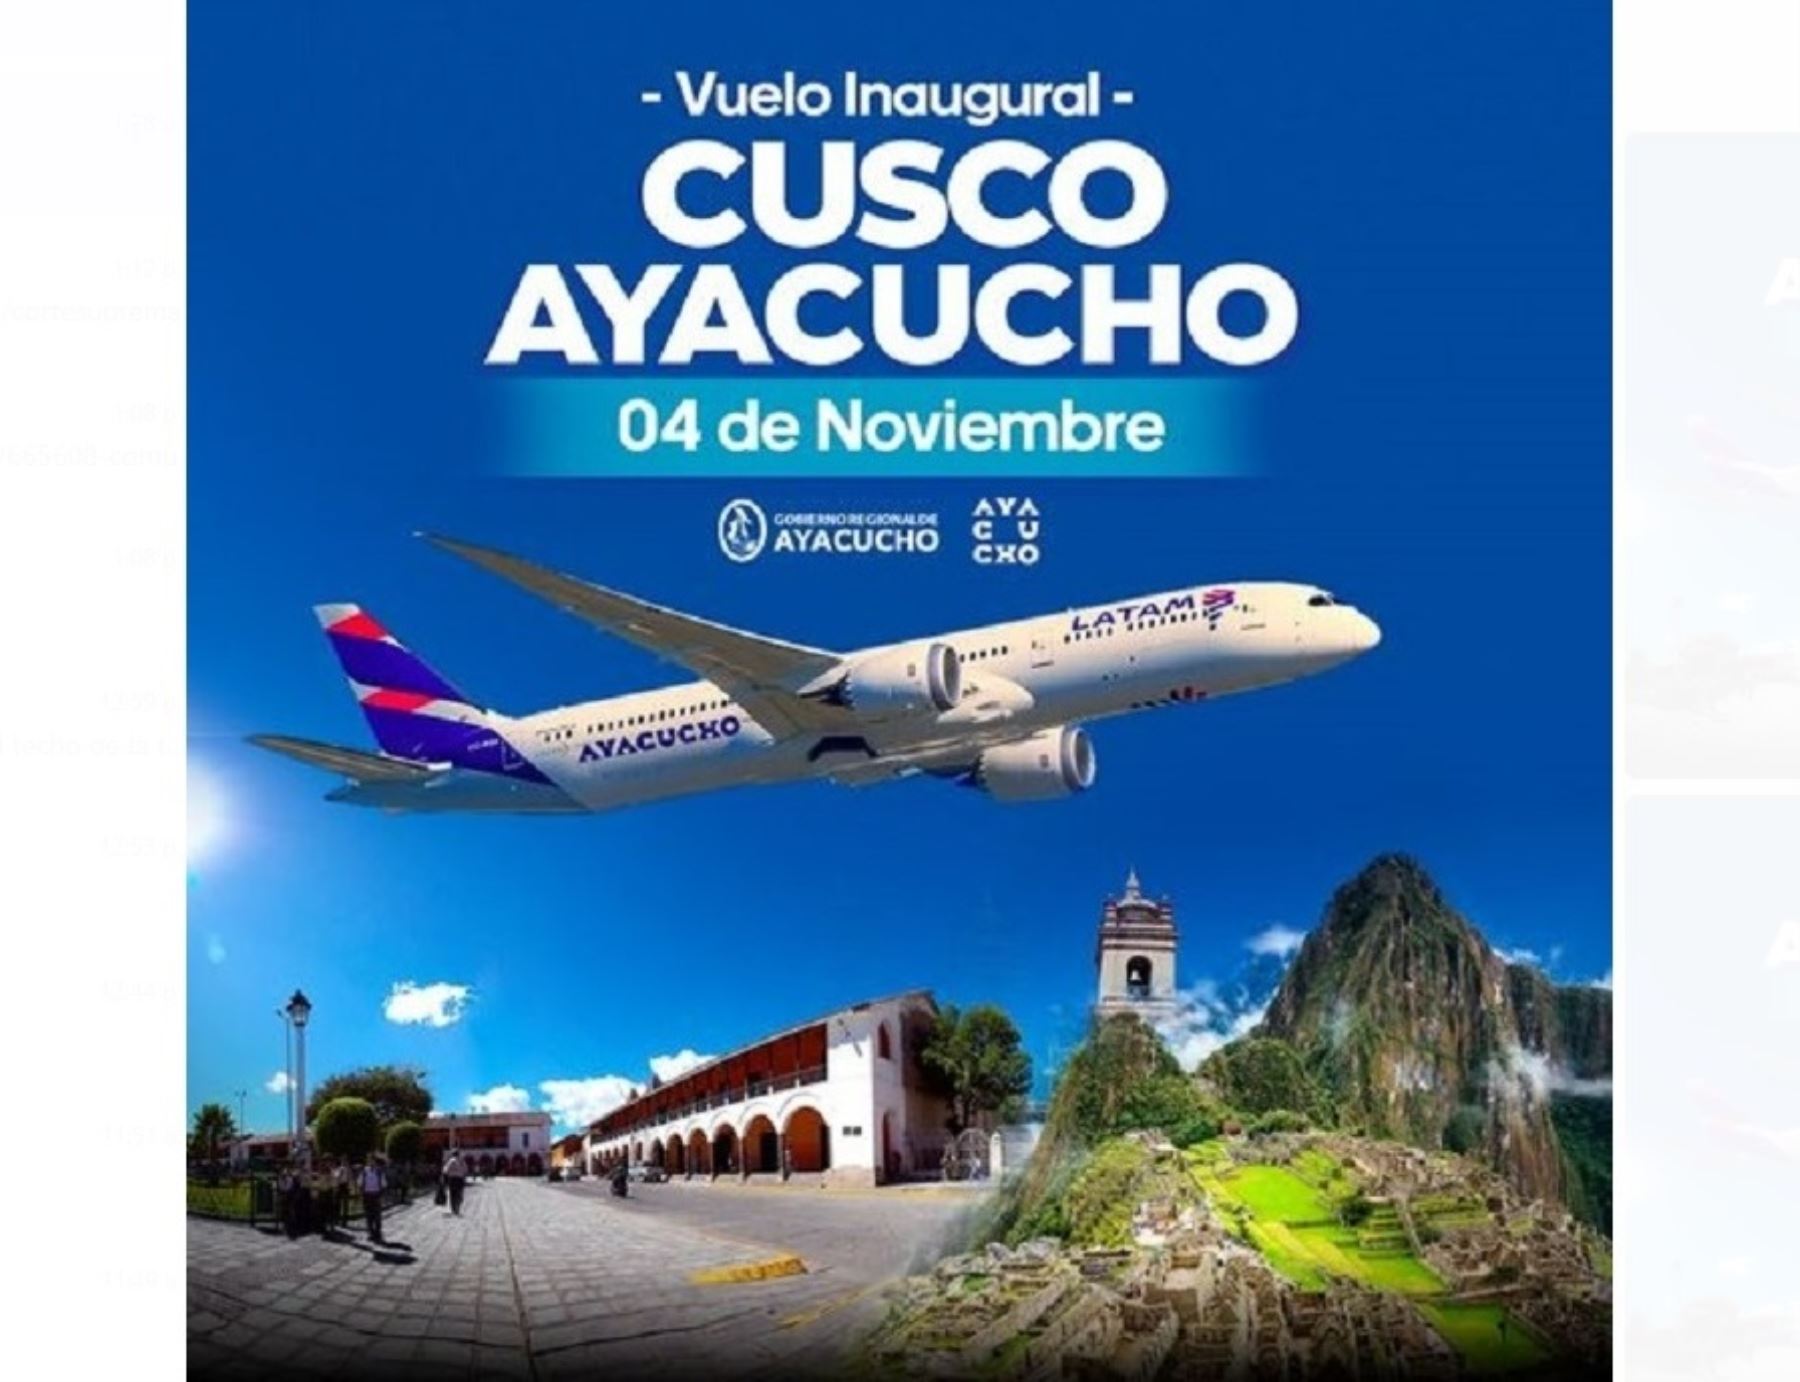 Este viernes 4 de noviembre se inaugura la ruta que unirá las ciudades de Cusco y Ayacucho.